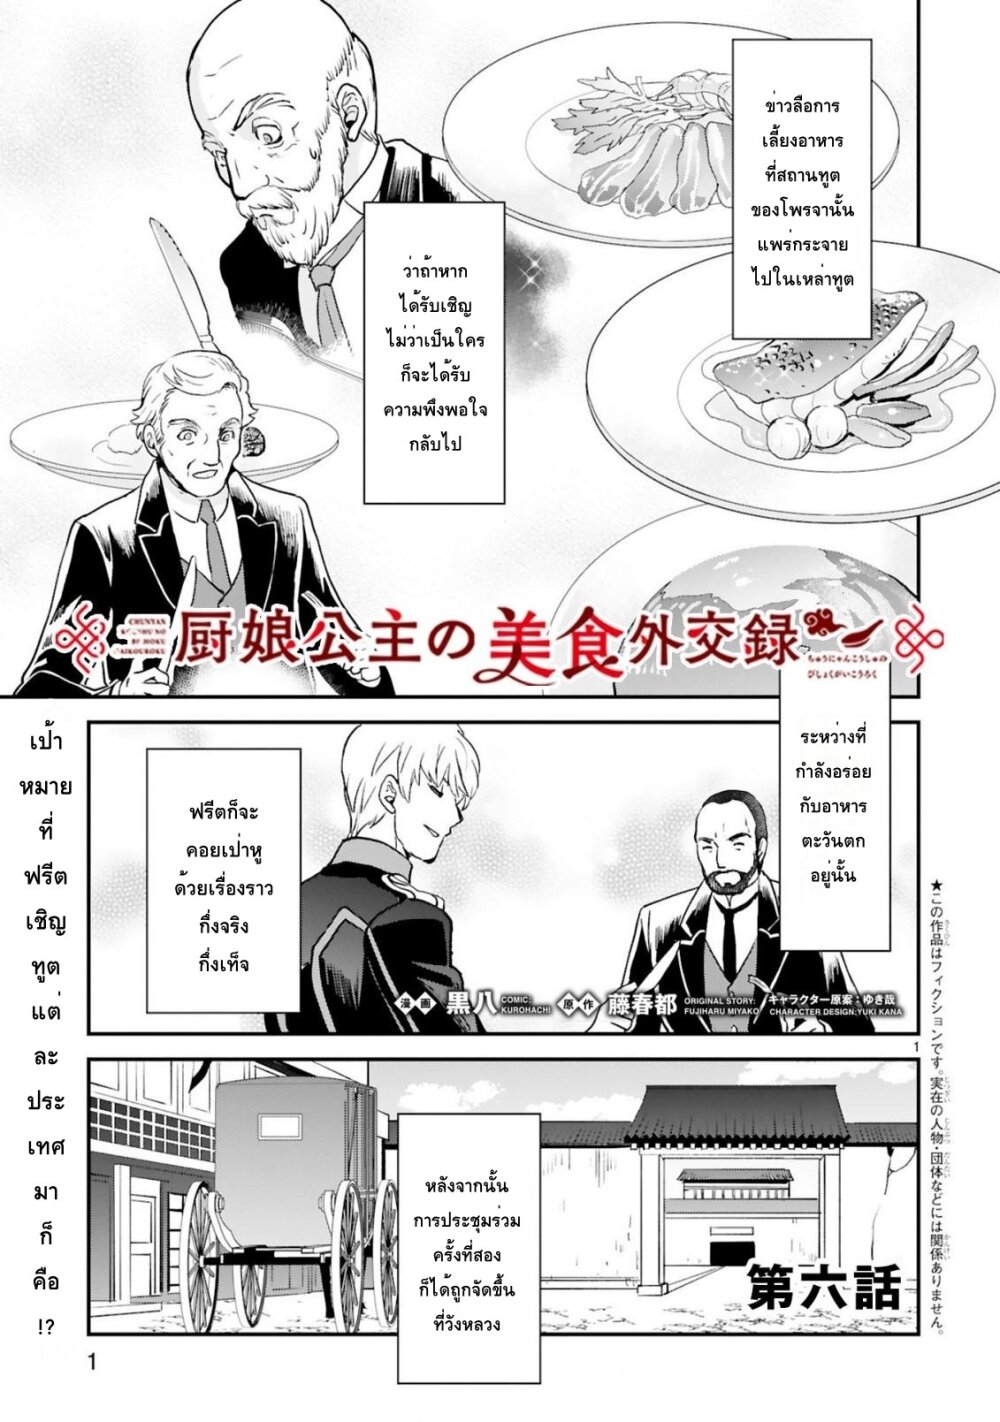 Chunyan Koushu no Bishoku Gaikouroku บันทึกการฑูตบนโต๊ะอาหารของเจ้าหญิงก้นครัว 6-6